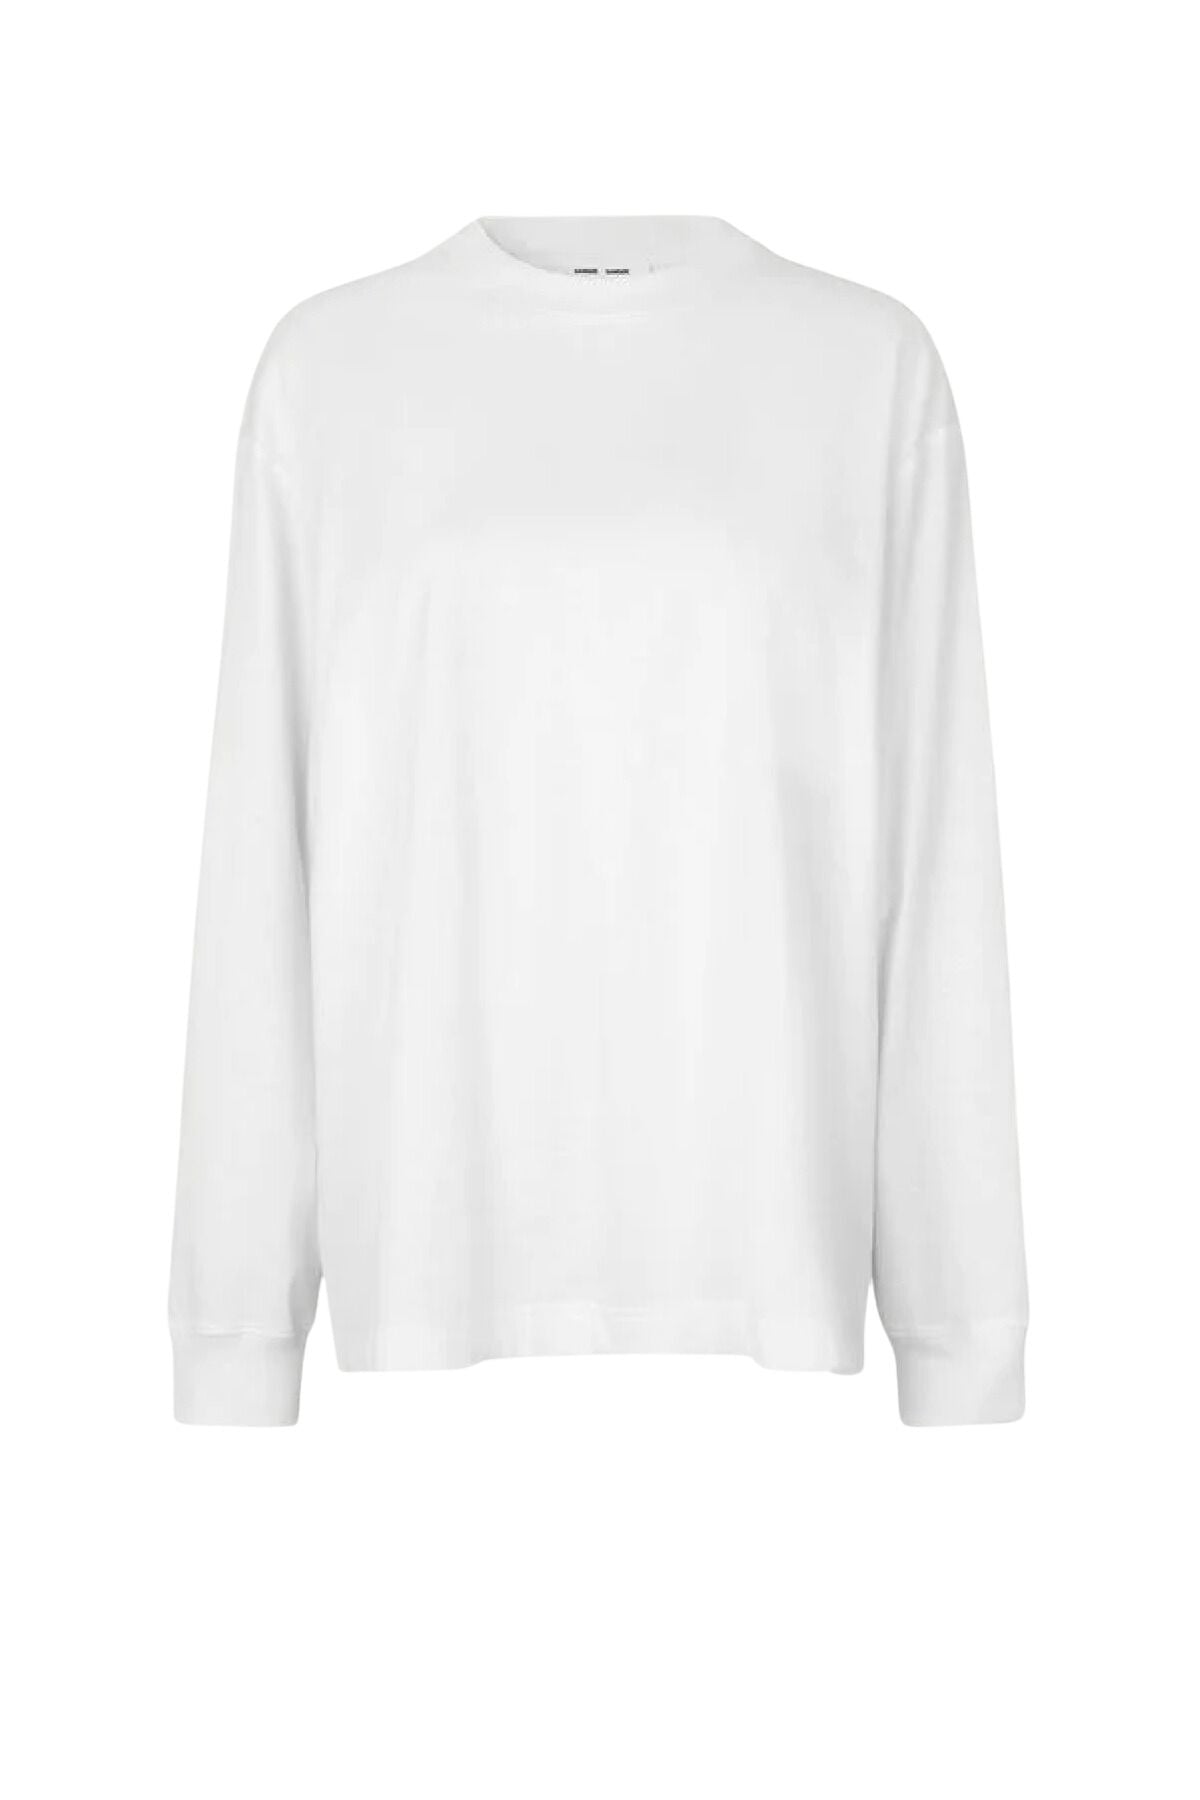 Samsøe Samsøe Chrome Long Sleeve T-Shirt - White